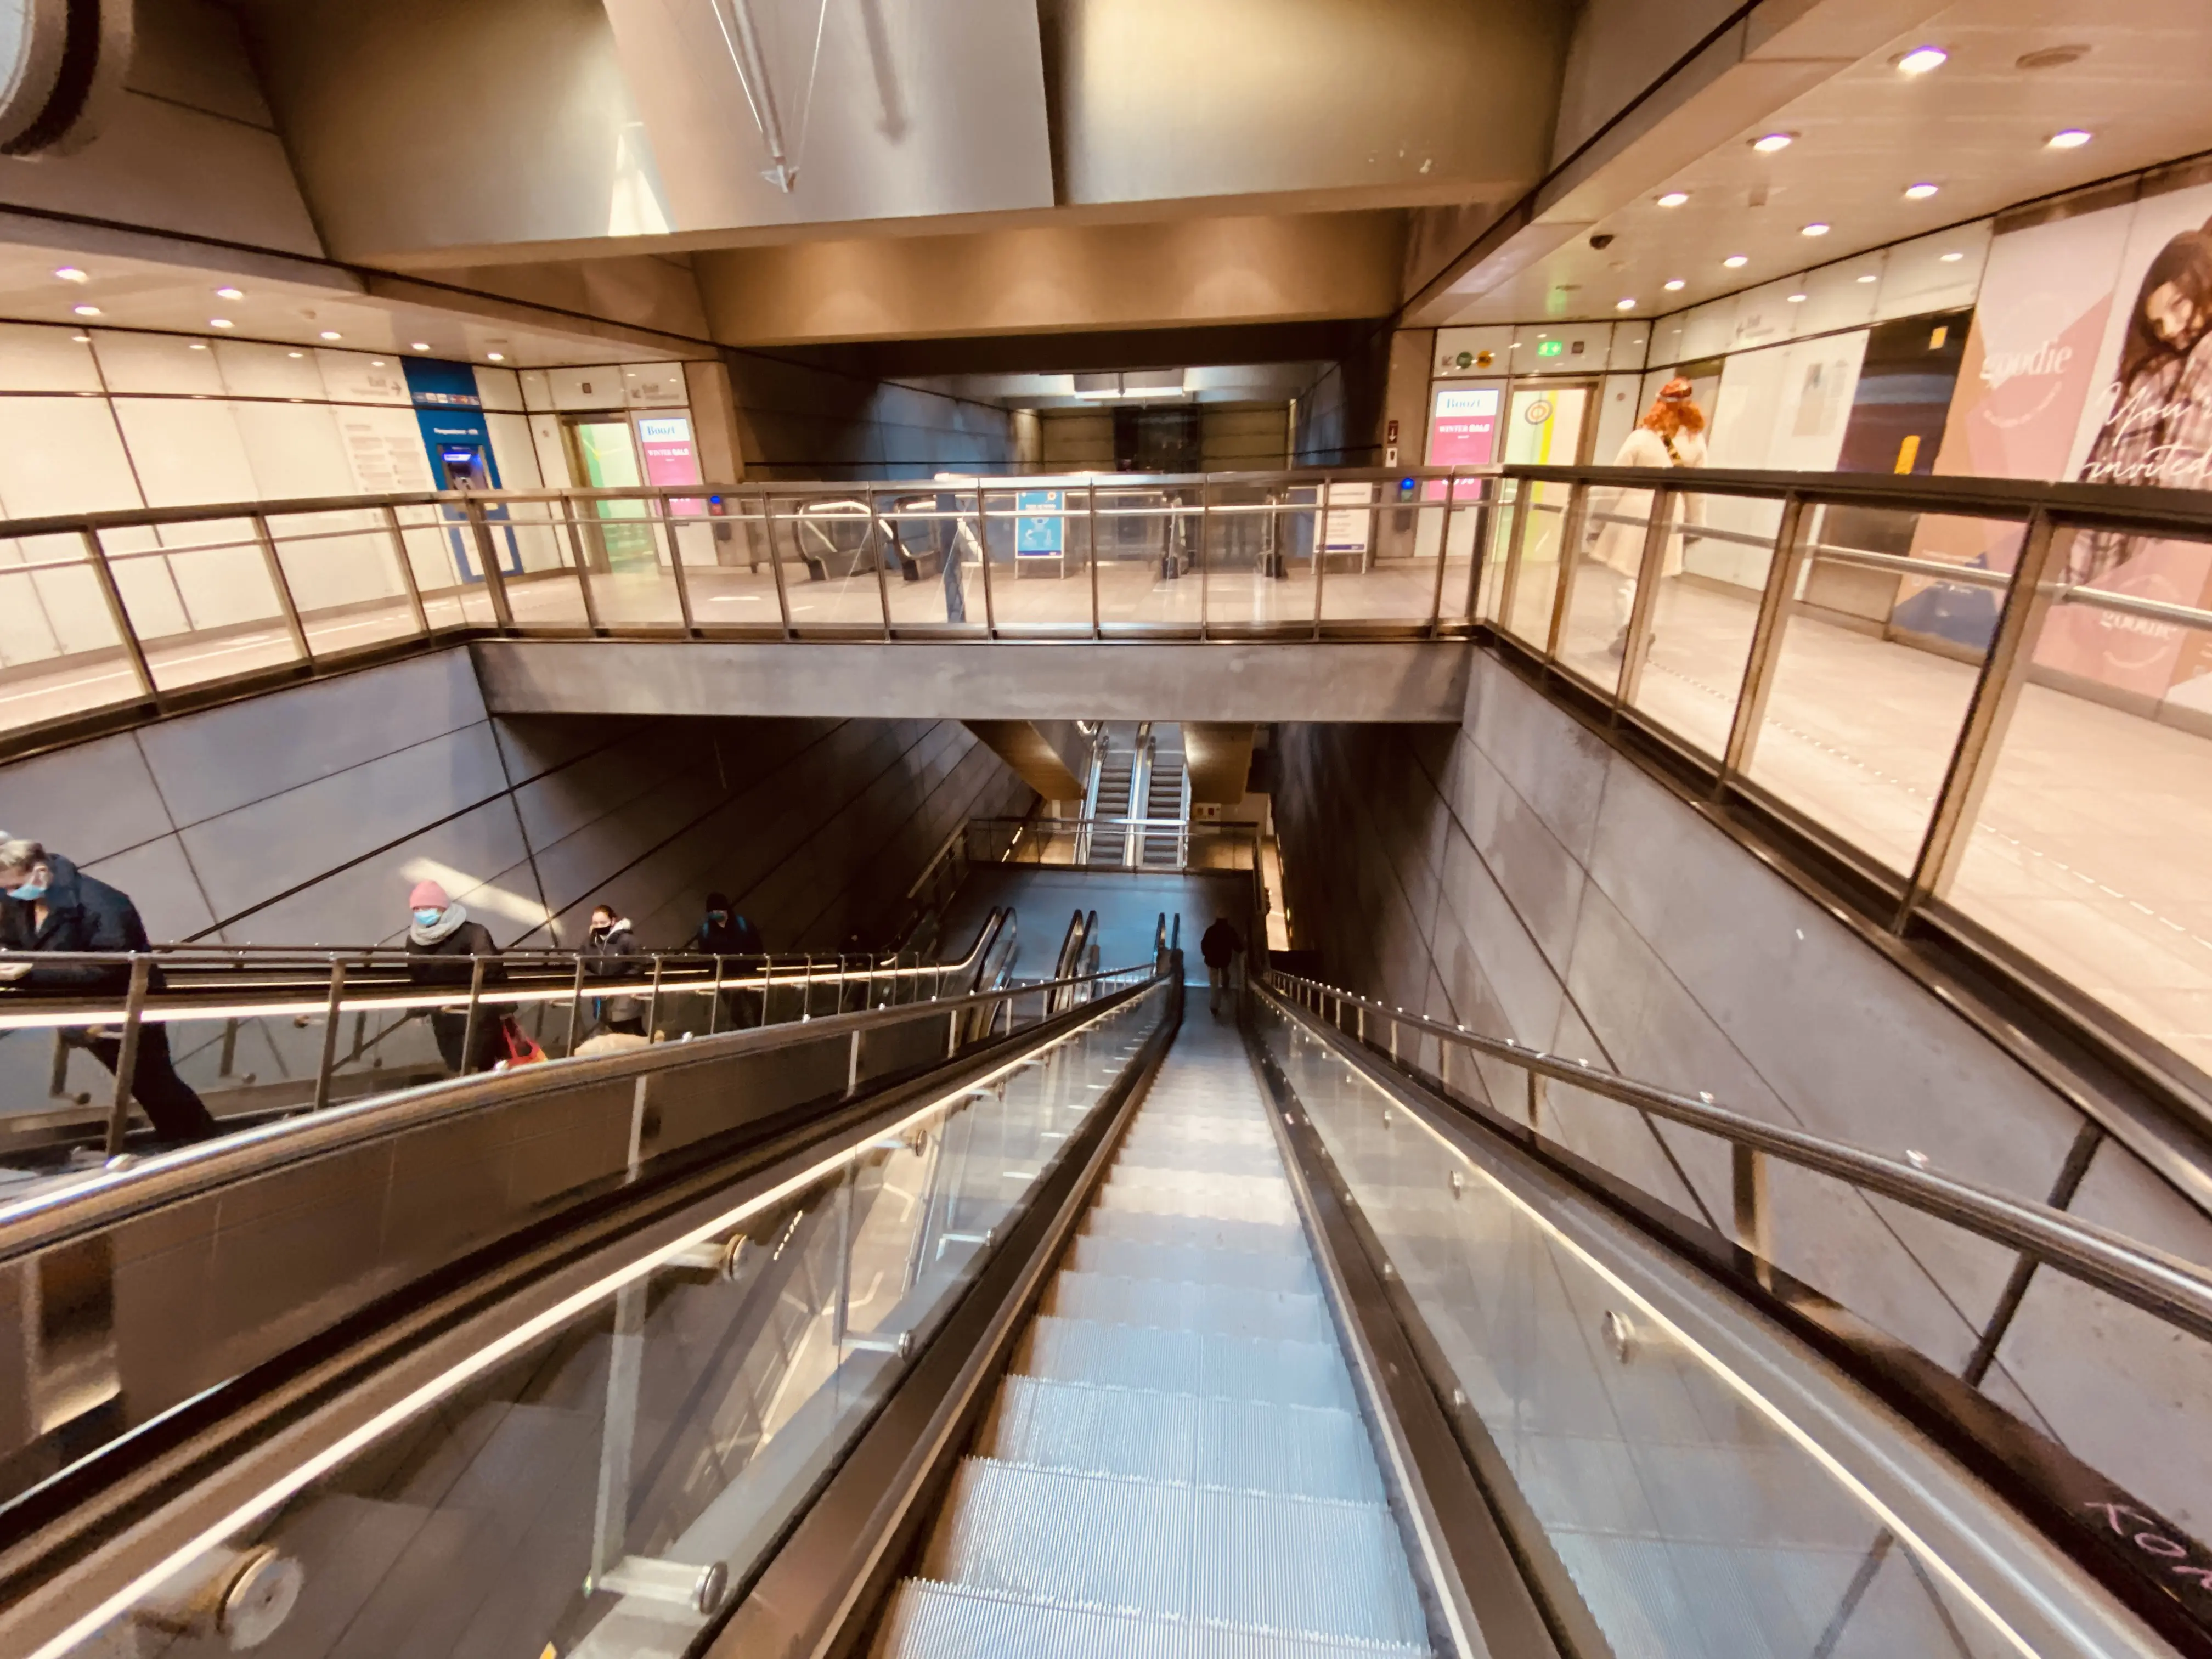 Billede af Kongens Nytorv Metrostation.